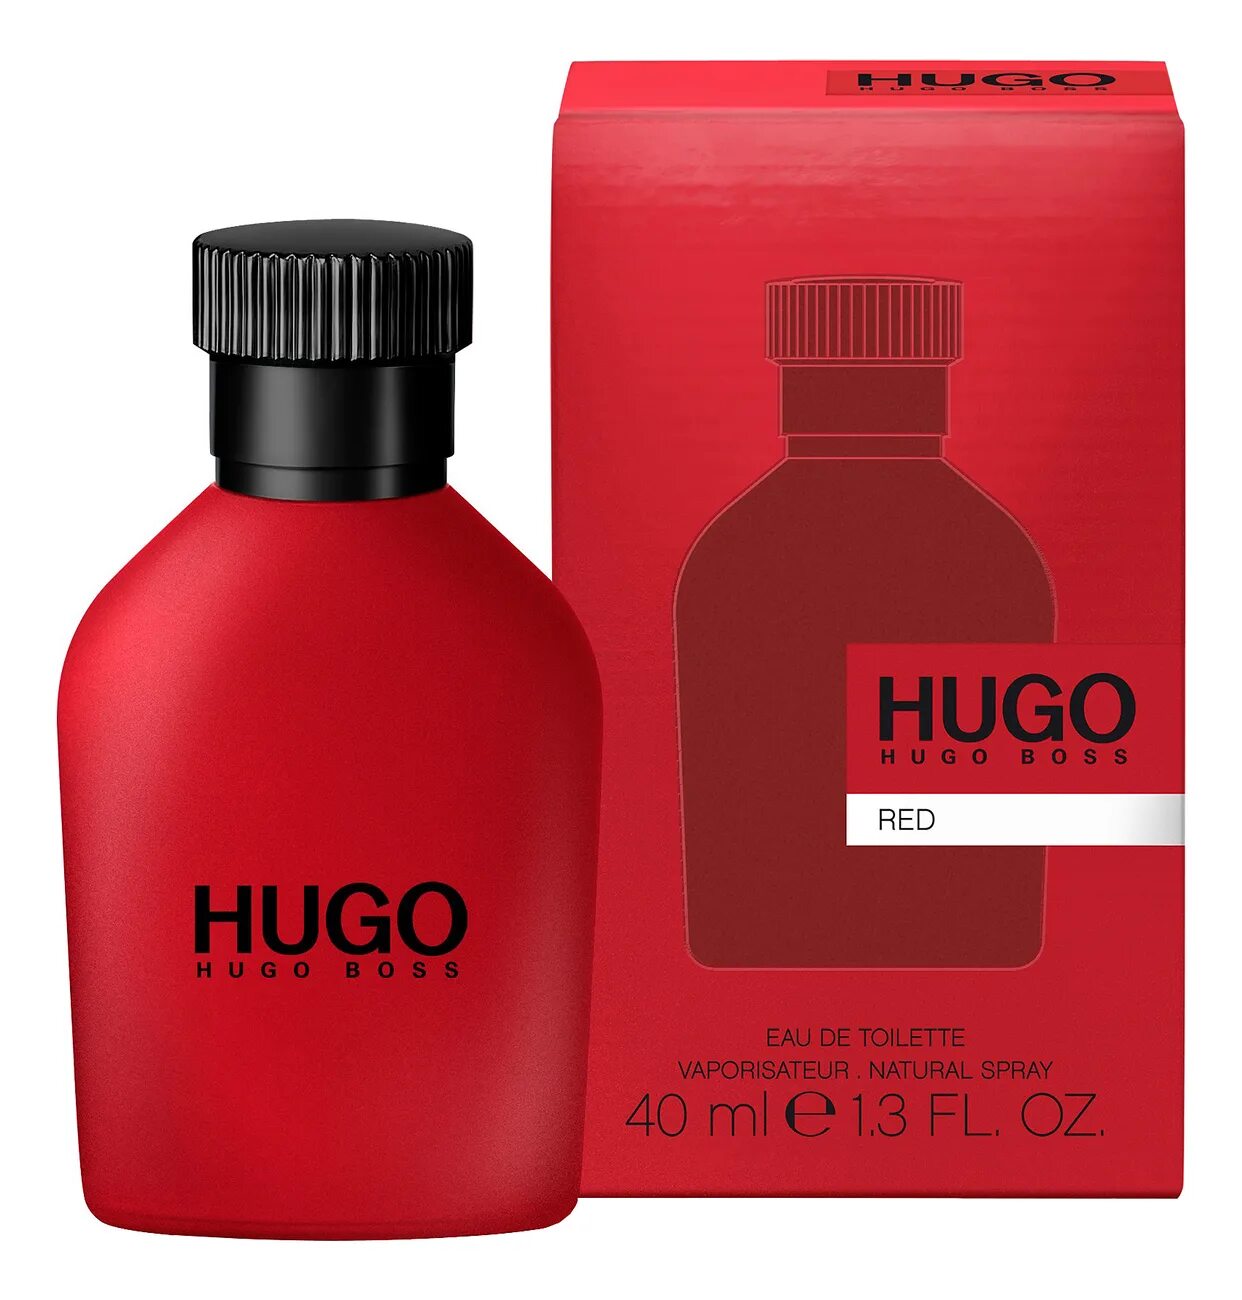 Hugo Boss "Hugo Red" EDT, 100ml. Hugo Boss Red, EDT., 150 ml. Hugo Boss Red EDT Хьюго босс ред туалетная вода 150 ml. Hugo Boss мужской Hugo туалетная вода (EDT) 40мл. Ml hugo